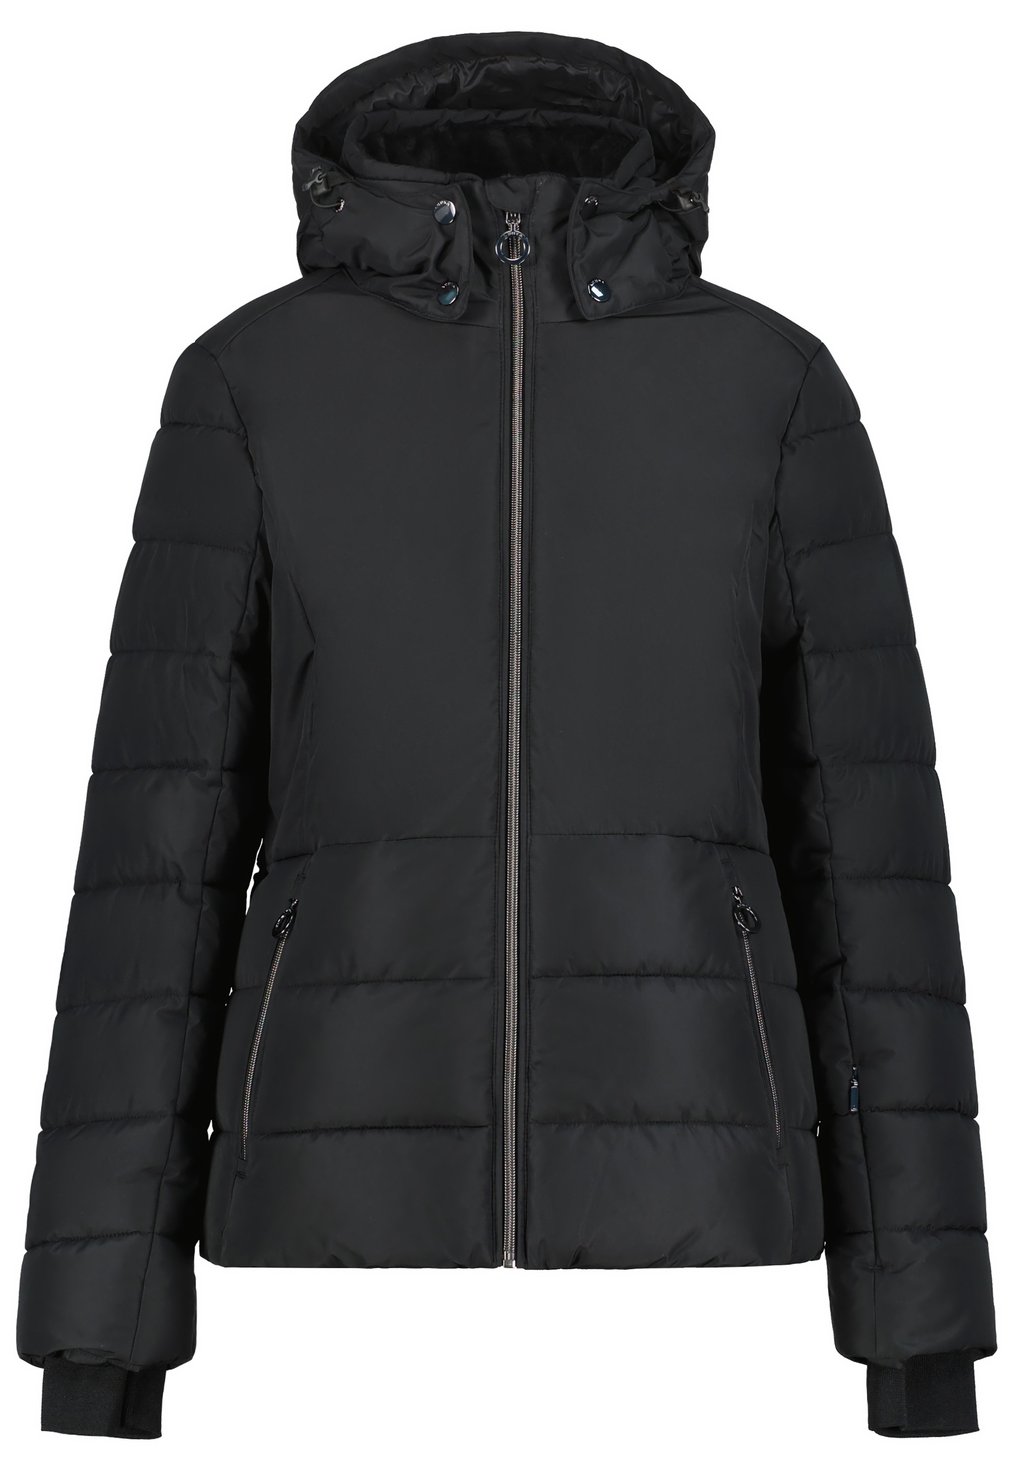 Зимняя куртка Luhta, черный куртка женская luhta peppiina 636461386lv